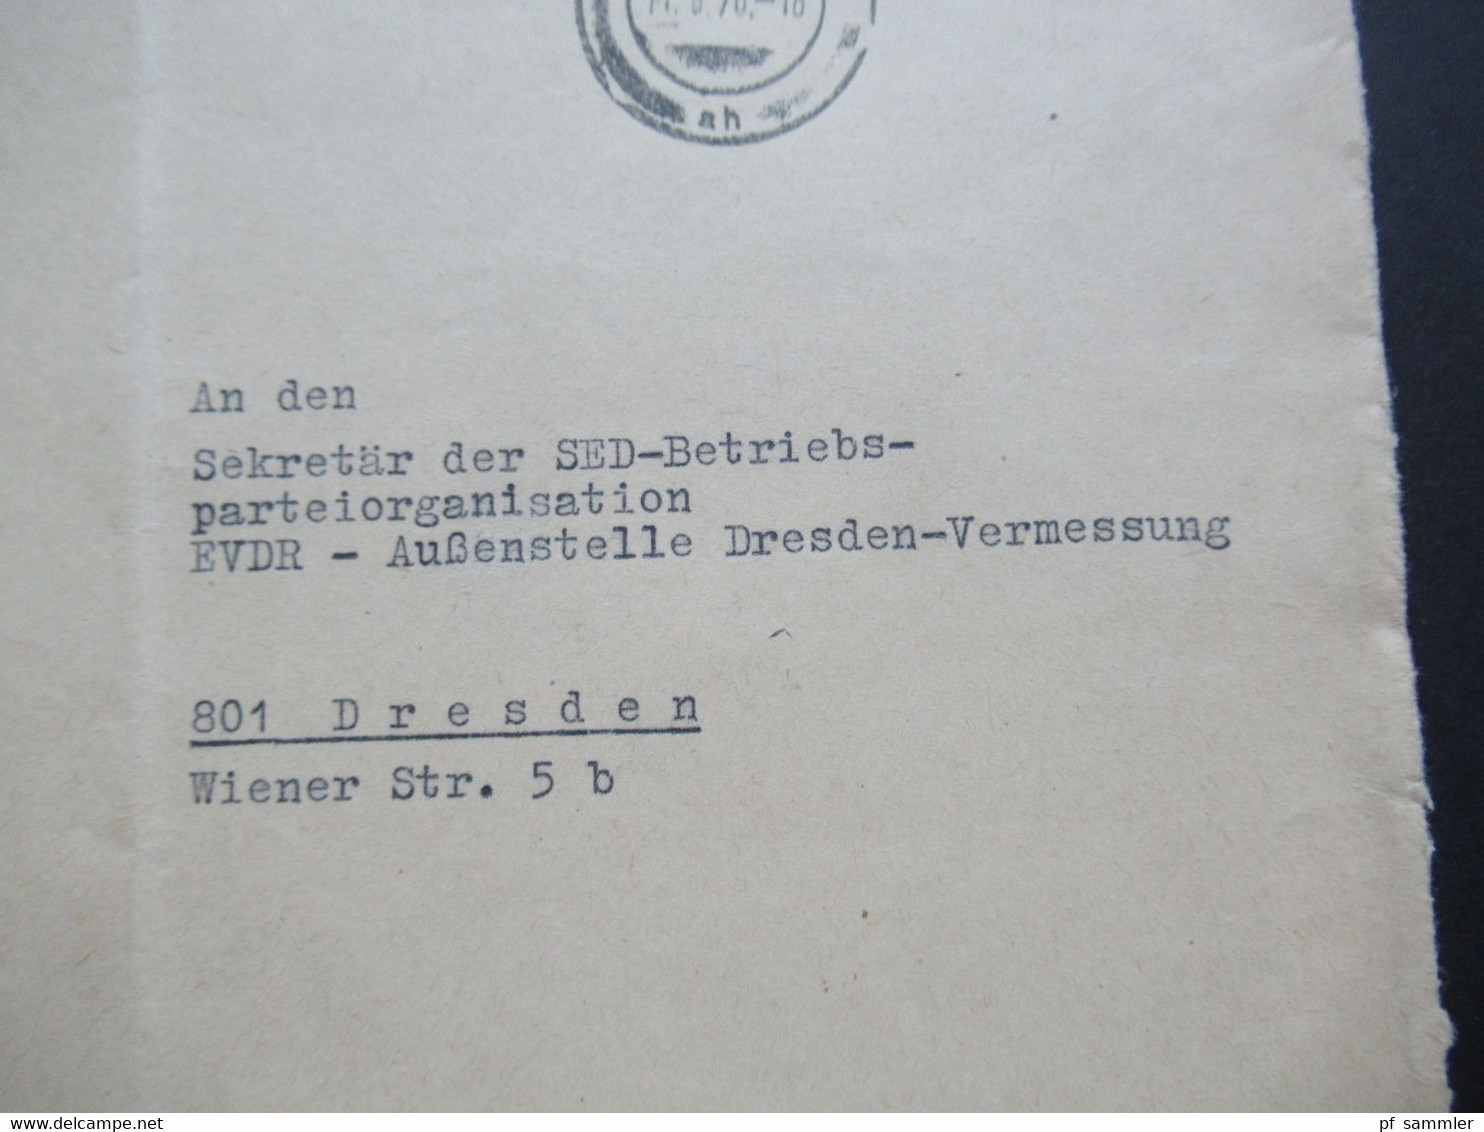 DDR 1970 ZKD Deutsche Reichsbahn Reichsbahnbaudirektion Berlin Roter Stempel Aushändigung Als Gewöhnliche Postsendung - Altri & Non Classificati